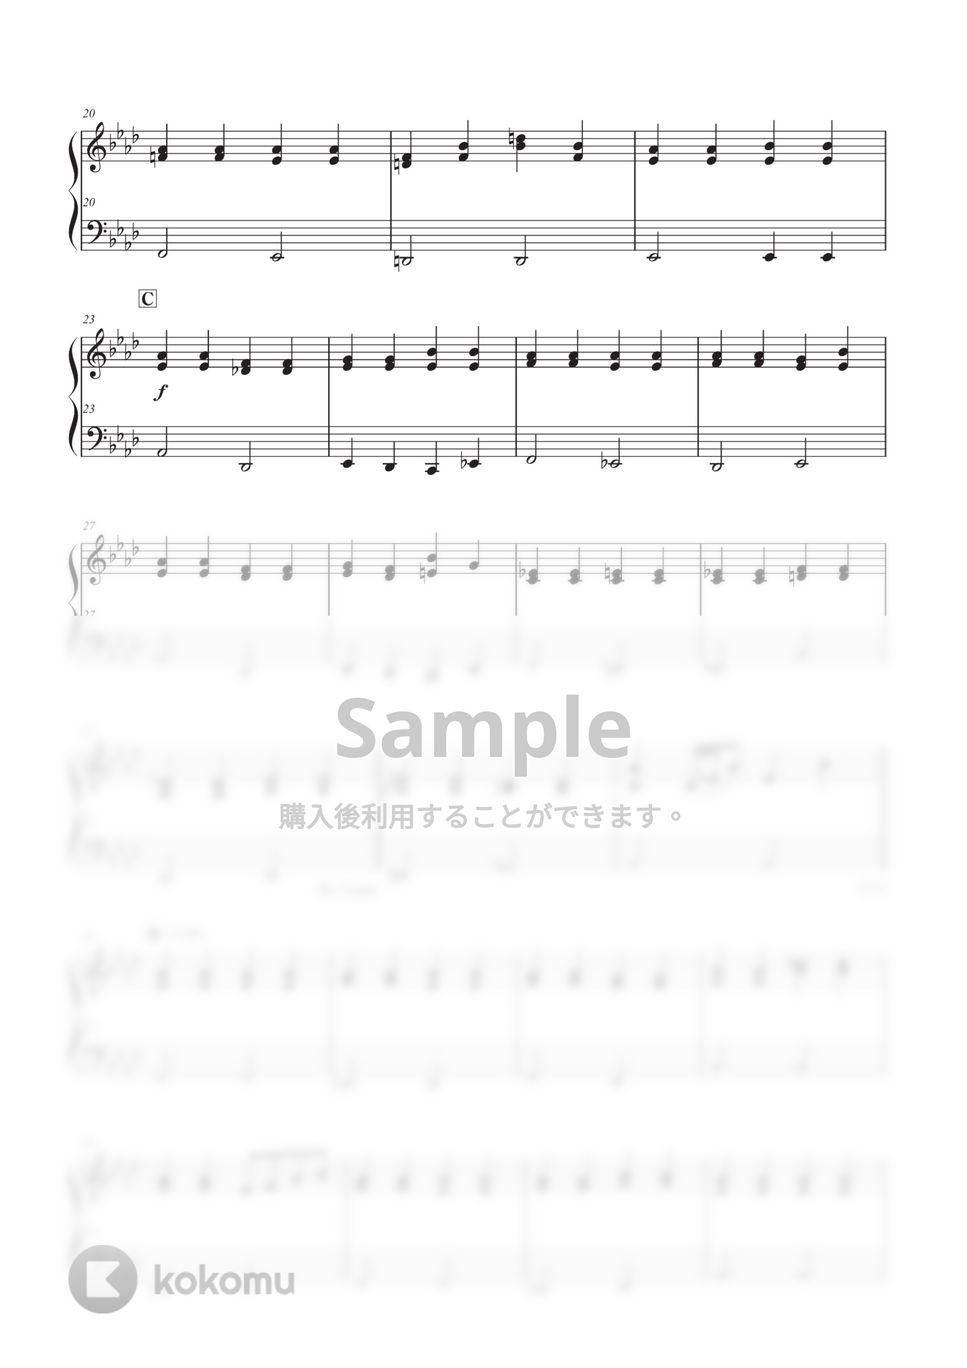 斉藤 和義 - 歌うたいのバラッド by BeauTone